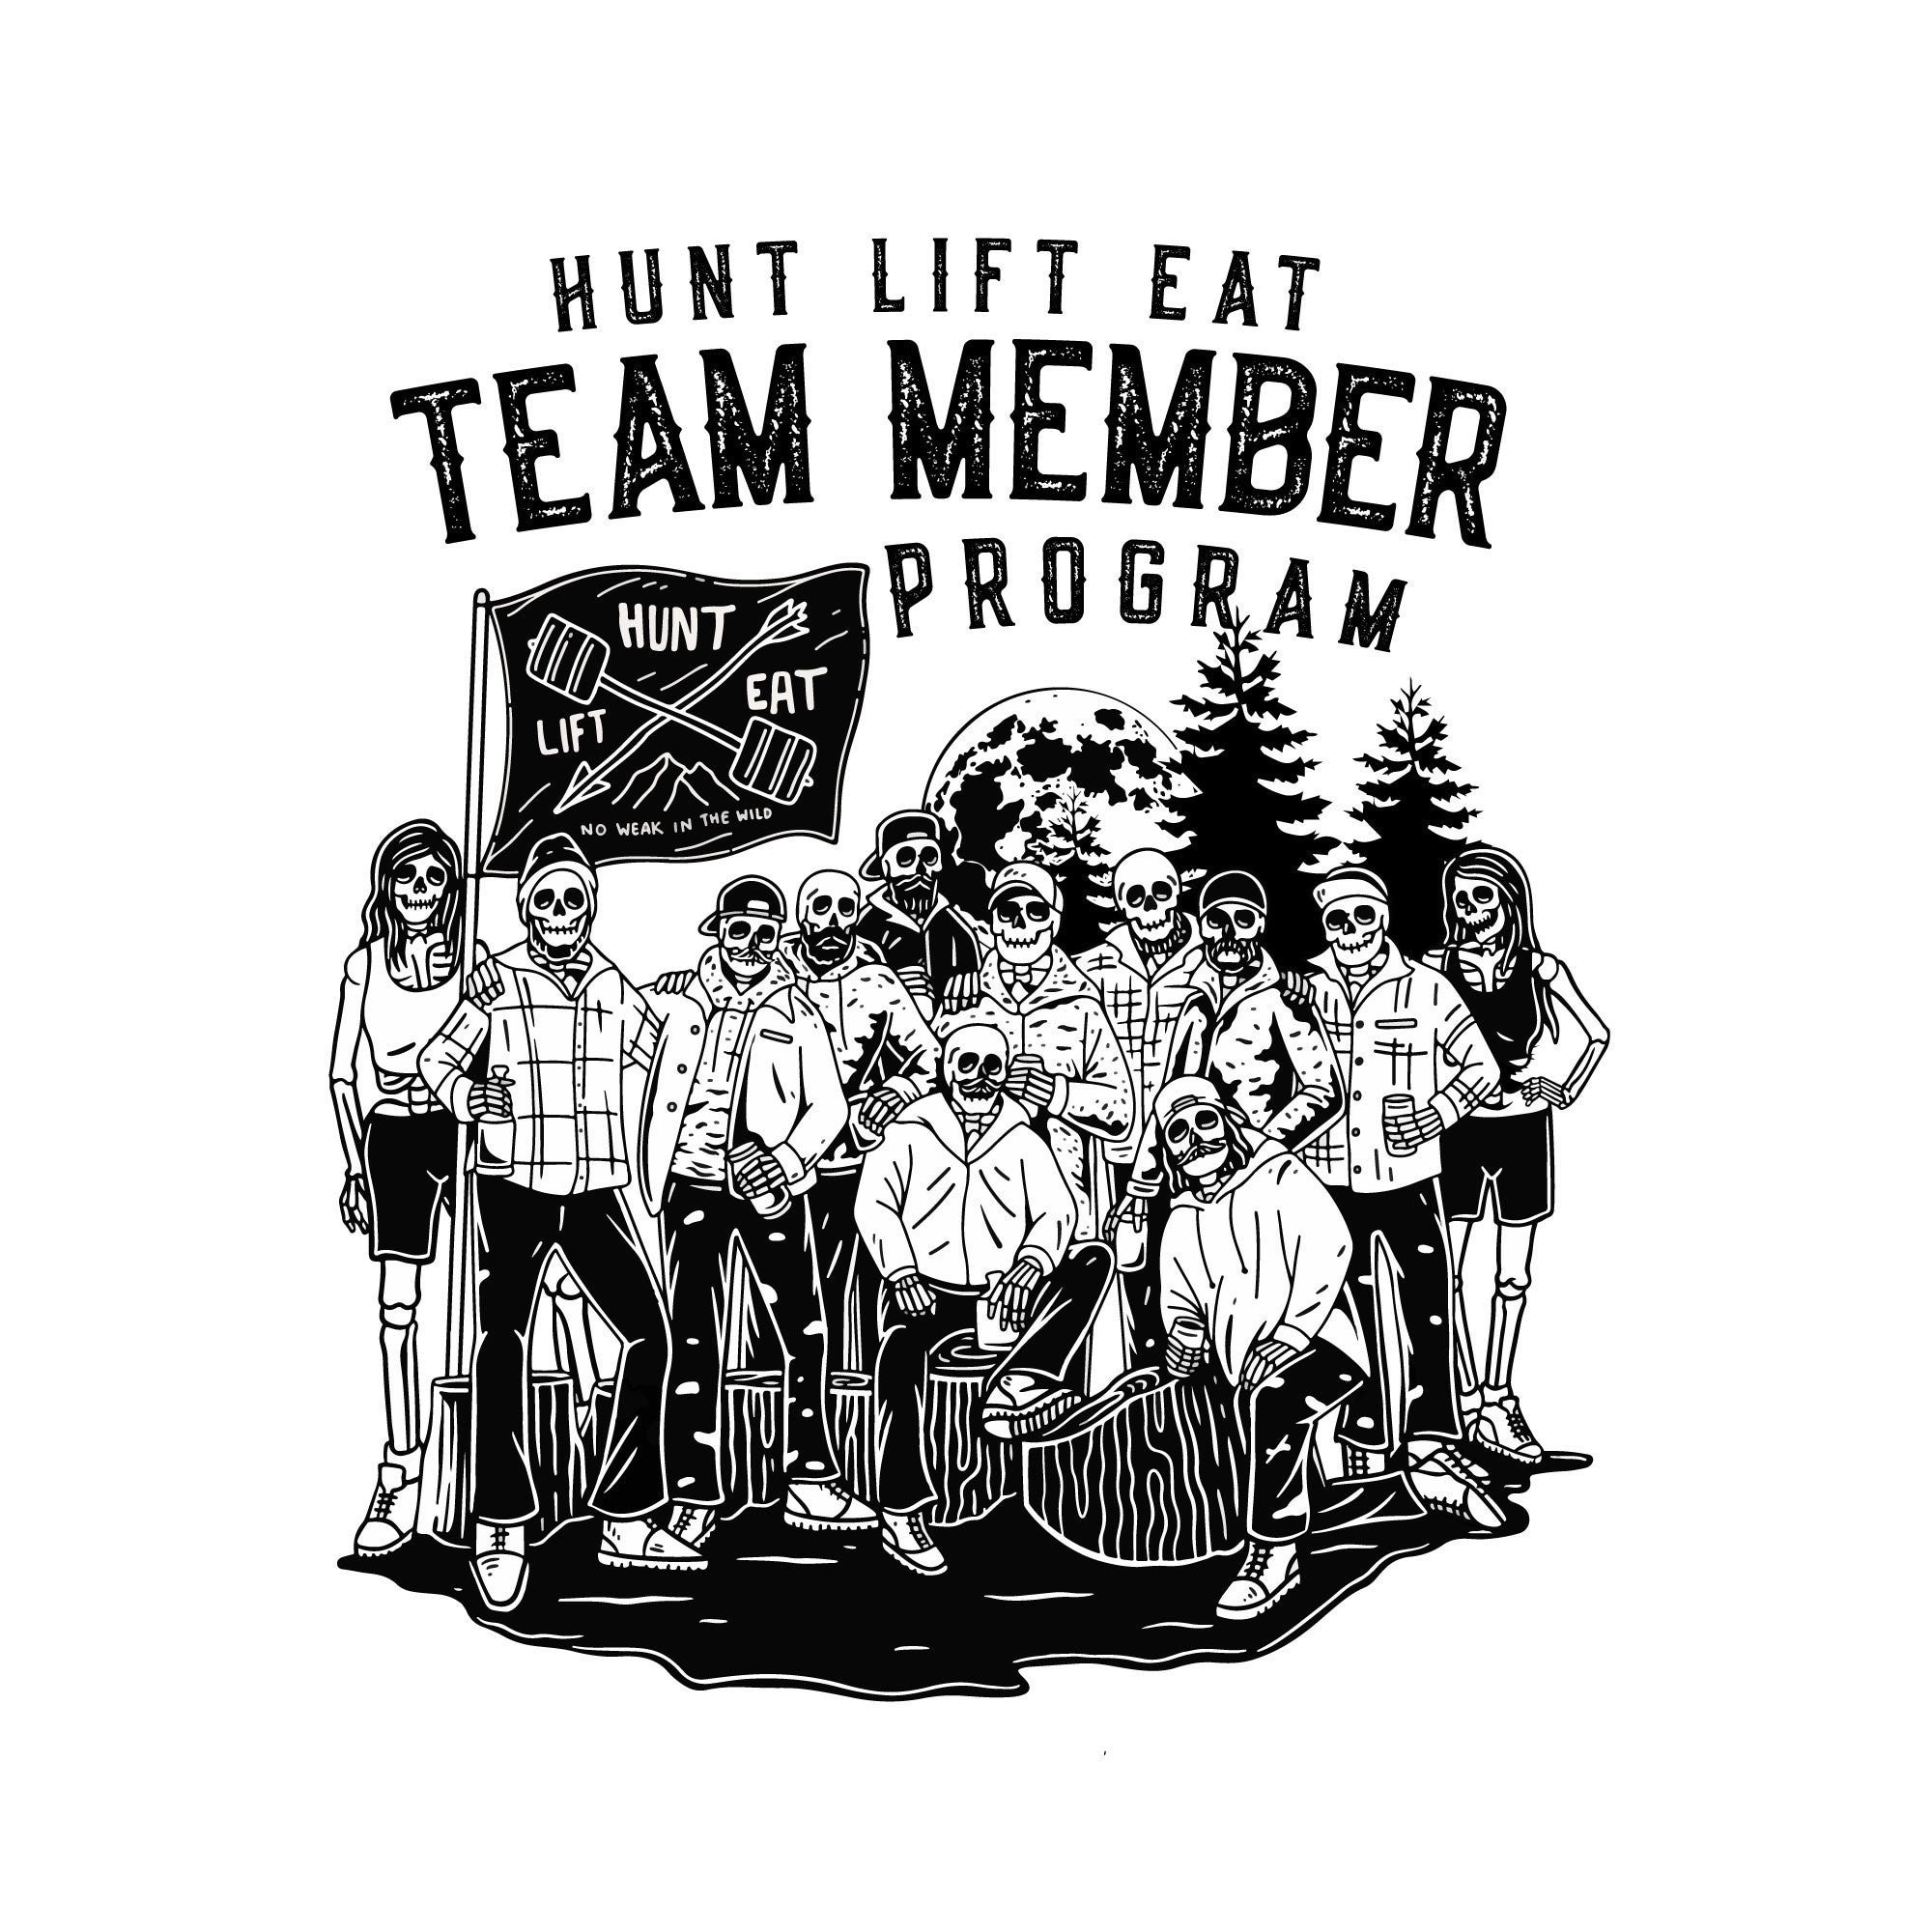 Hunt Lift Eat Team Member Application Program